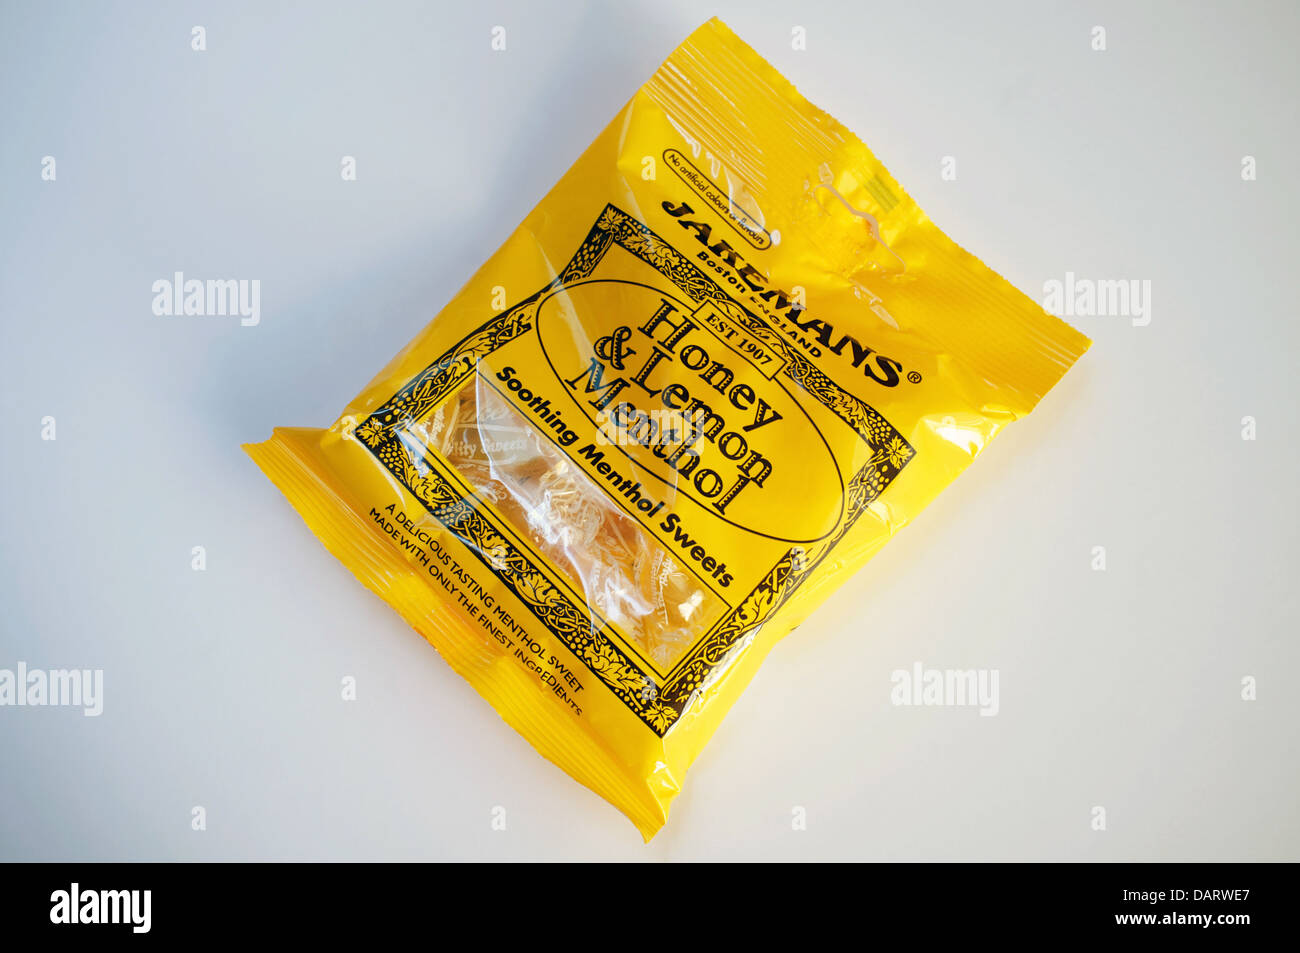 Jakemans honey & lemon soothing menthol sweets Stock Photo